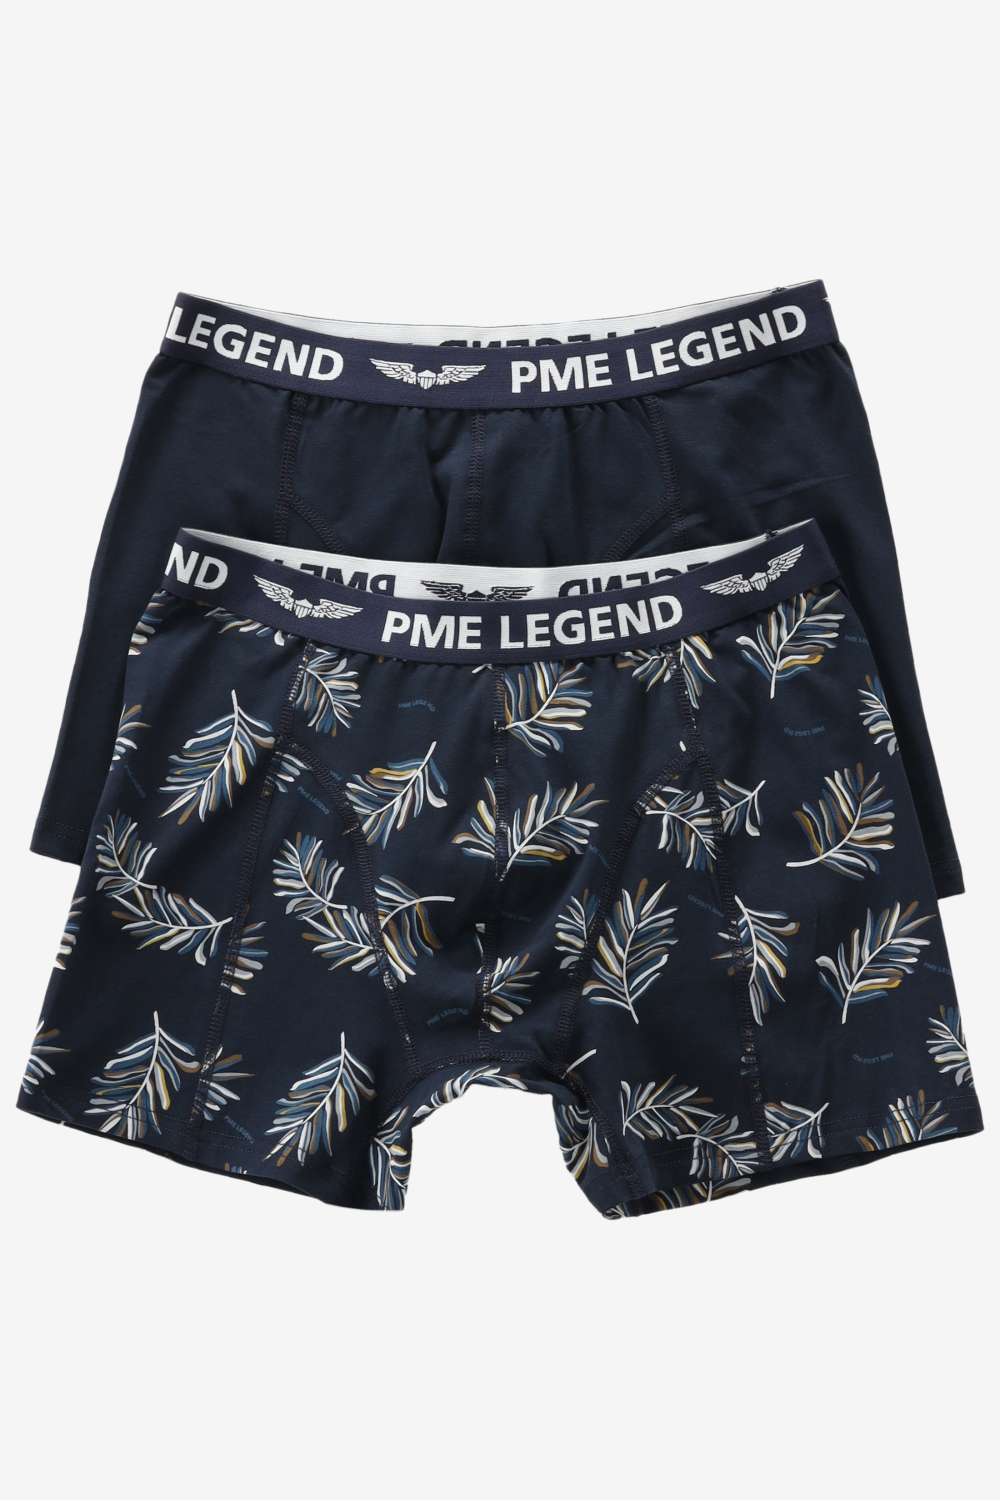 Pme legend underwear maat L